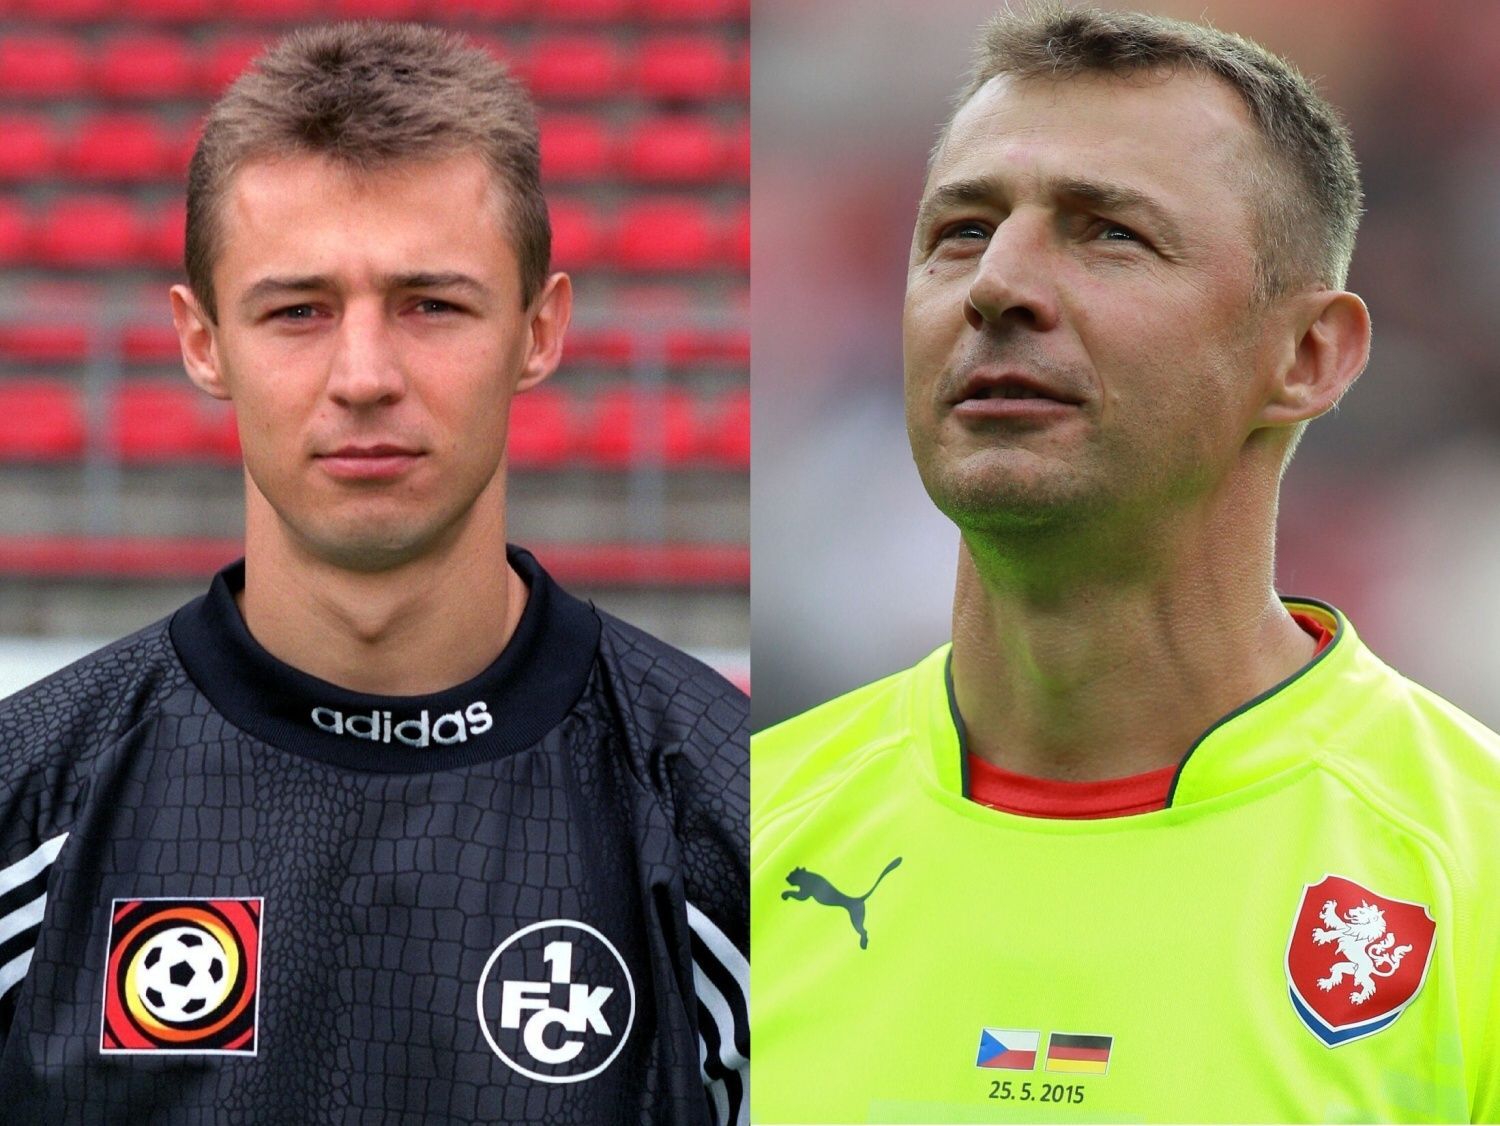 Porovnání 1996 vs. 2015: Petr Kouba